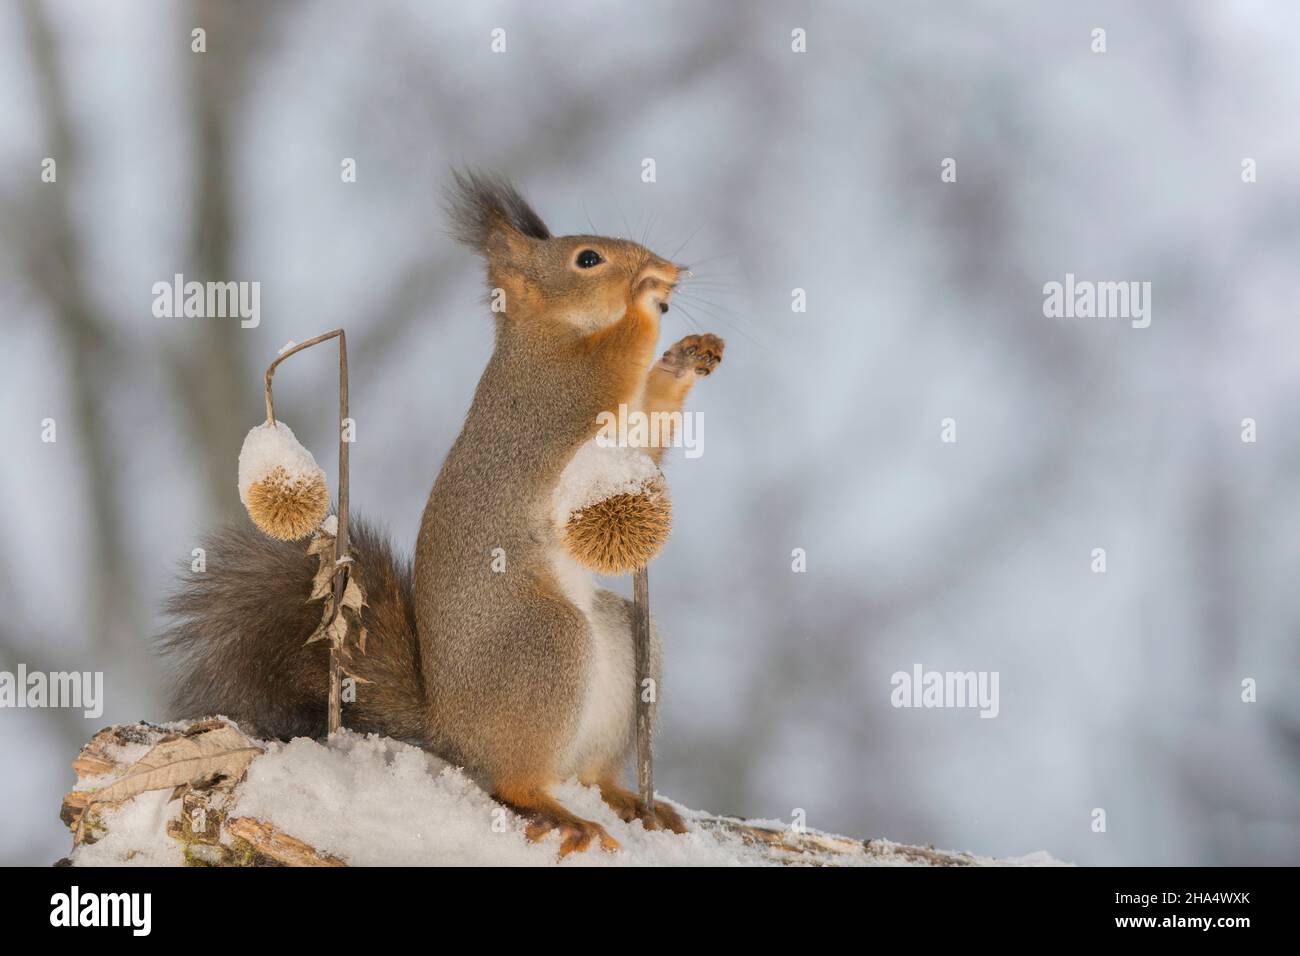 Nahaufnahme eines roten Eichhörnchens auf Schnee, das eine getrocknete gefrorene Distel berührt und nach oben schaut und greift Stockfoto